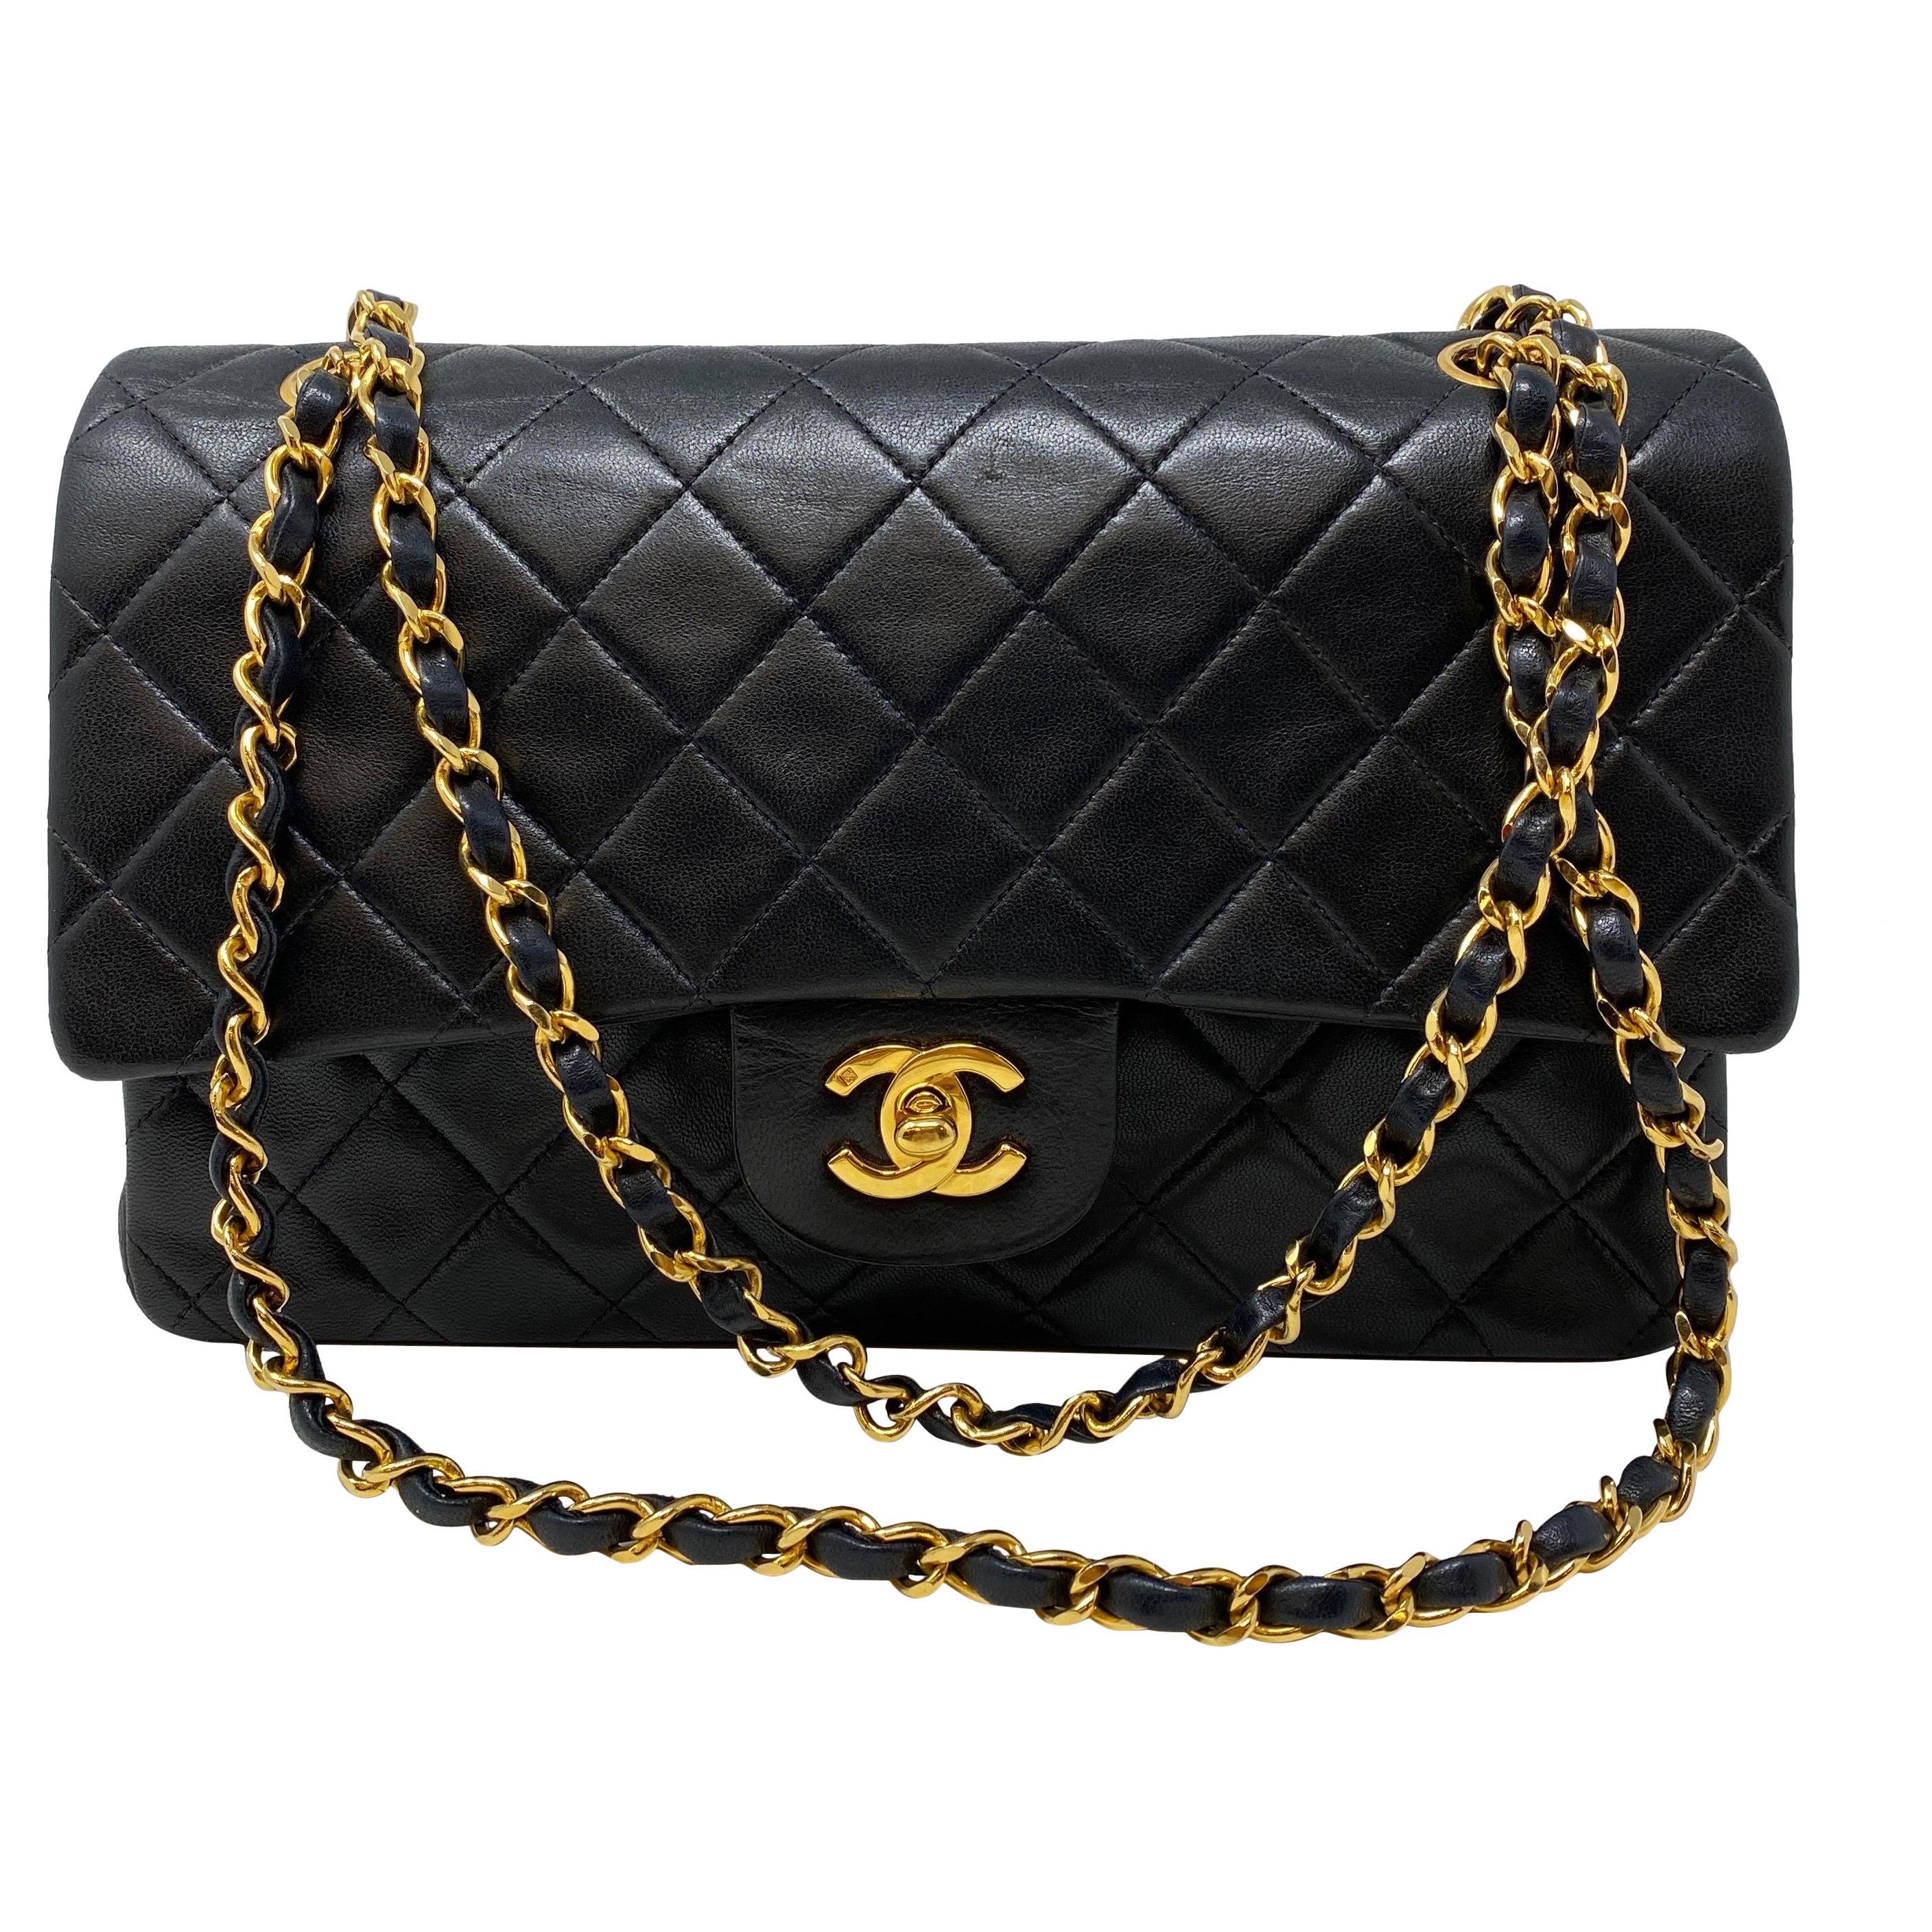 Chanel Black Vintage Medium Double Flap Classic Bag